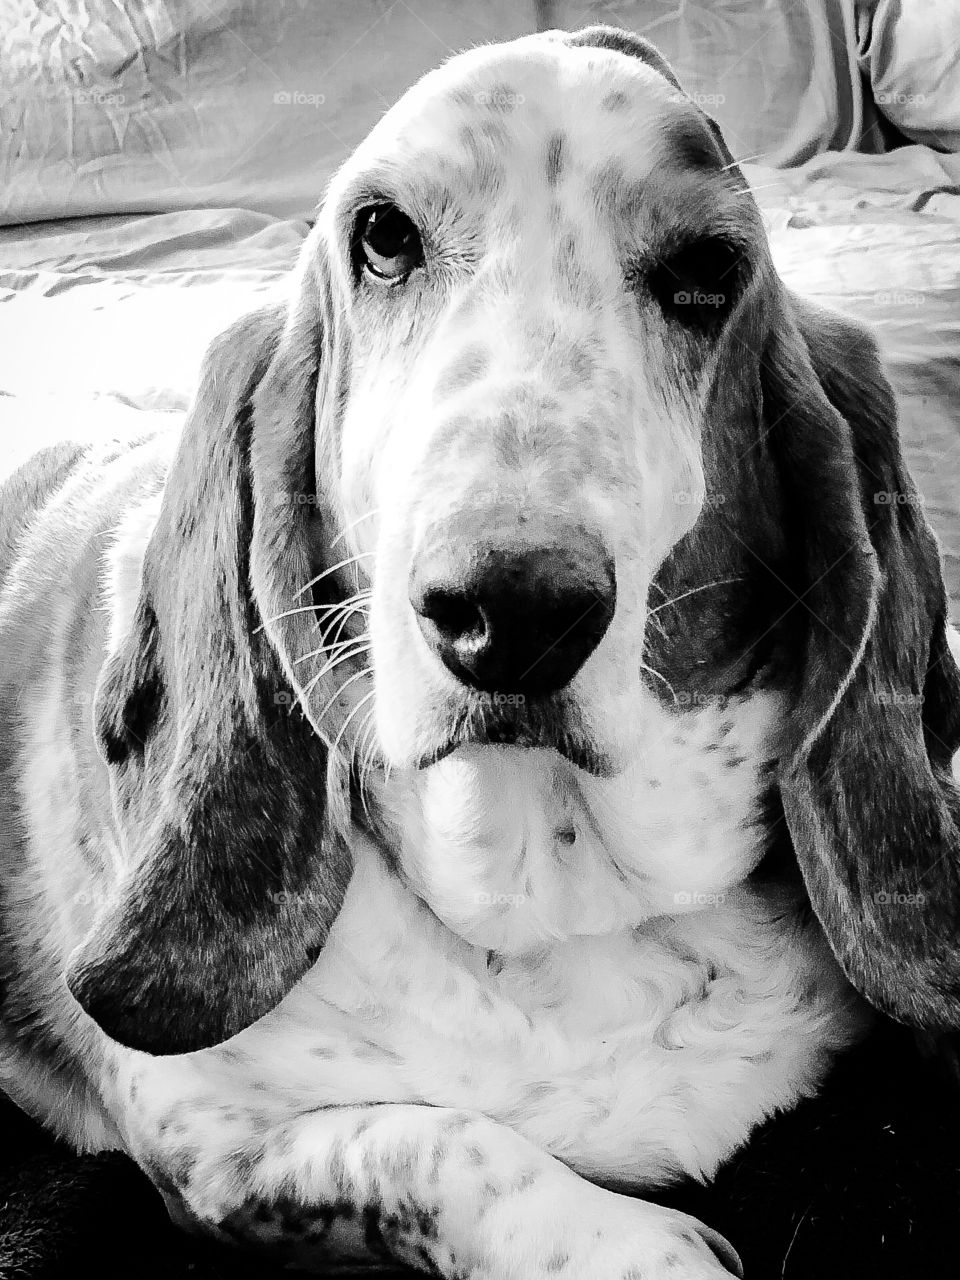 A portrait of William the basset hound